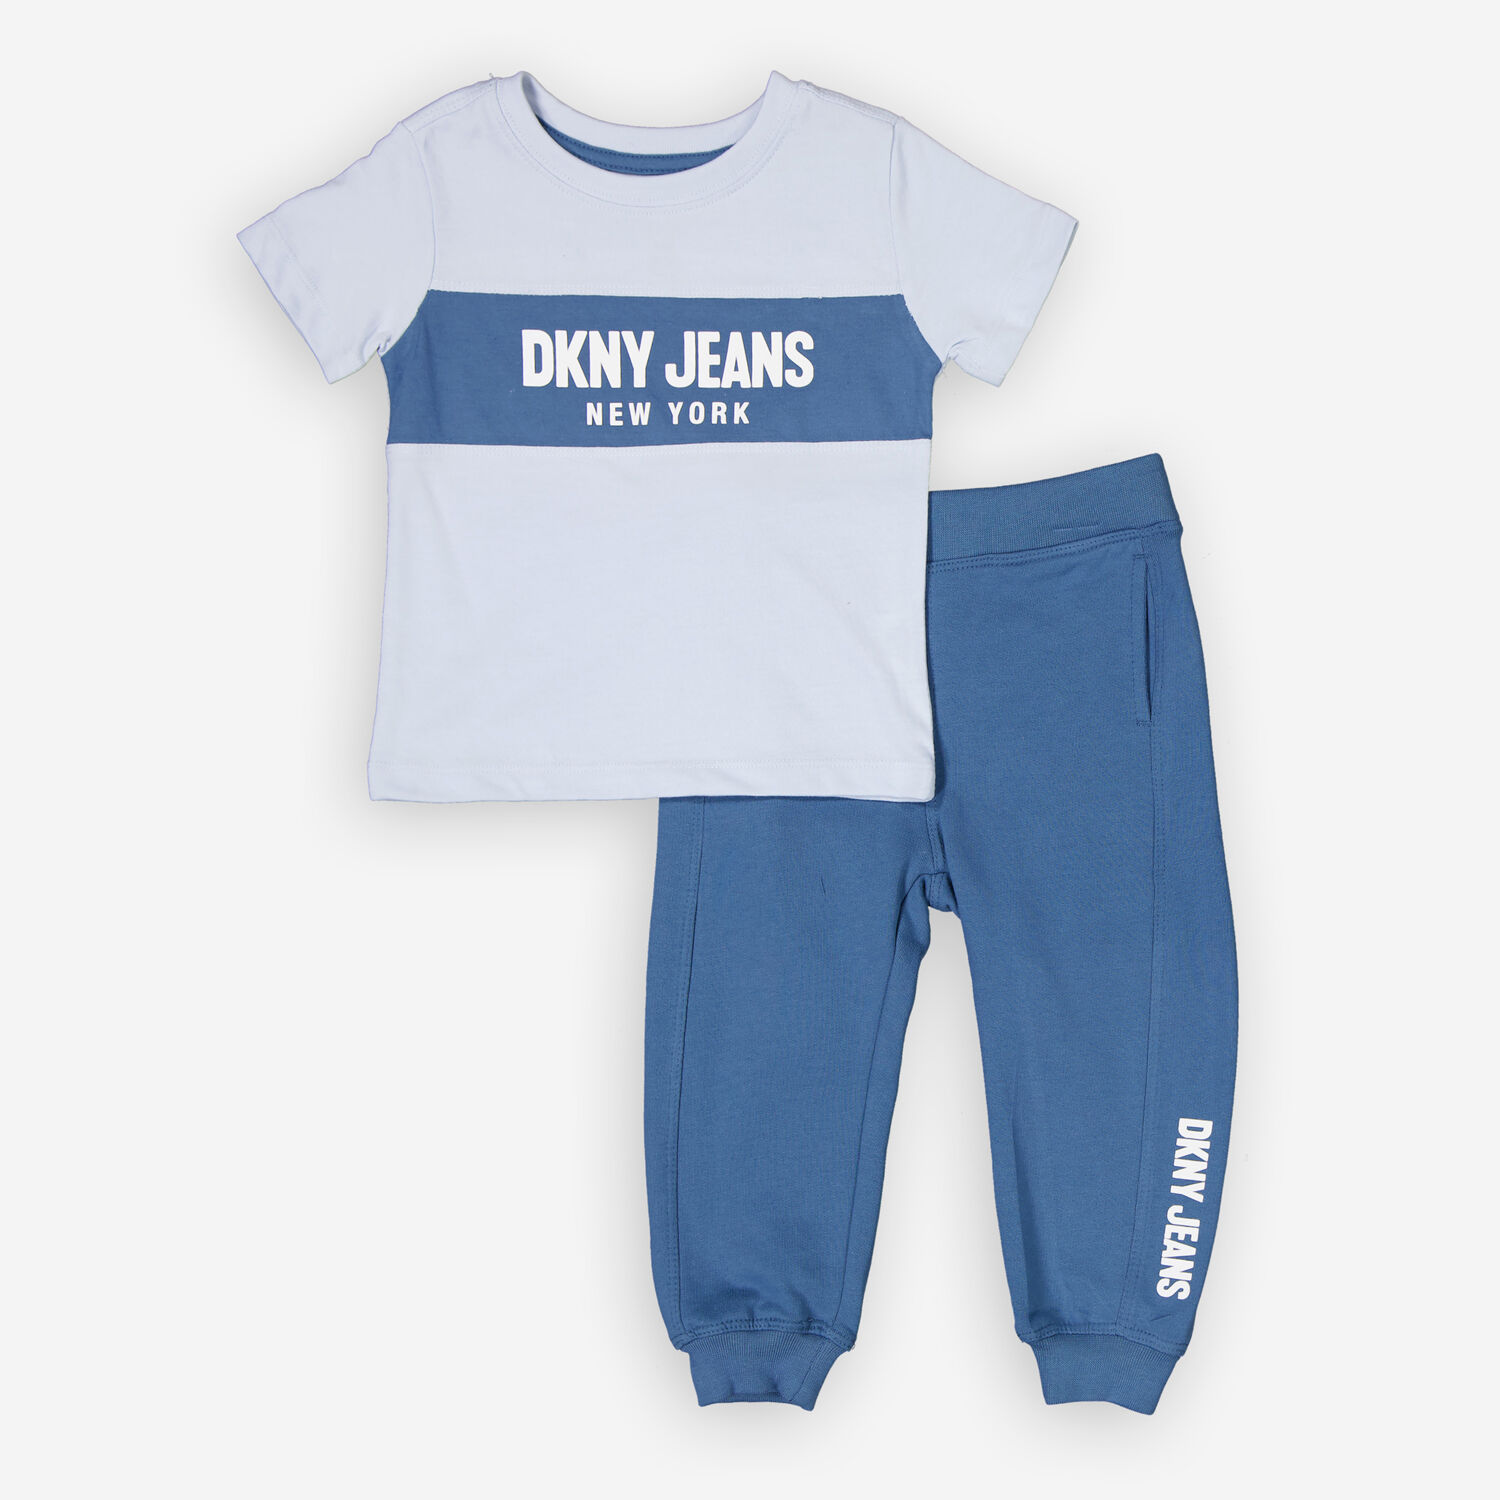 Комплект-двойка синего цвета, состоящий из футболки и спортивных штанов DKNY Jeans